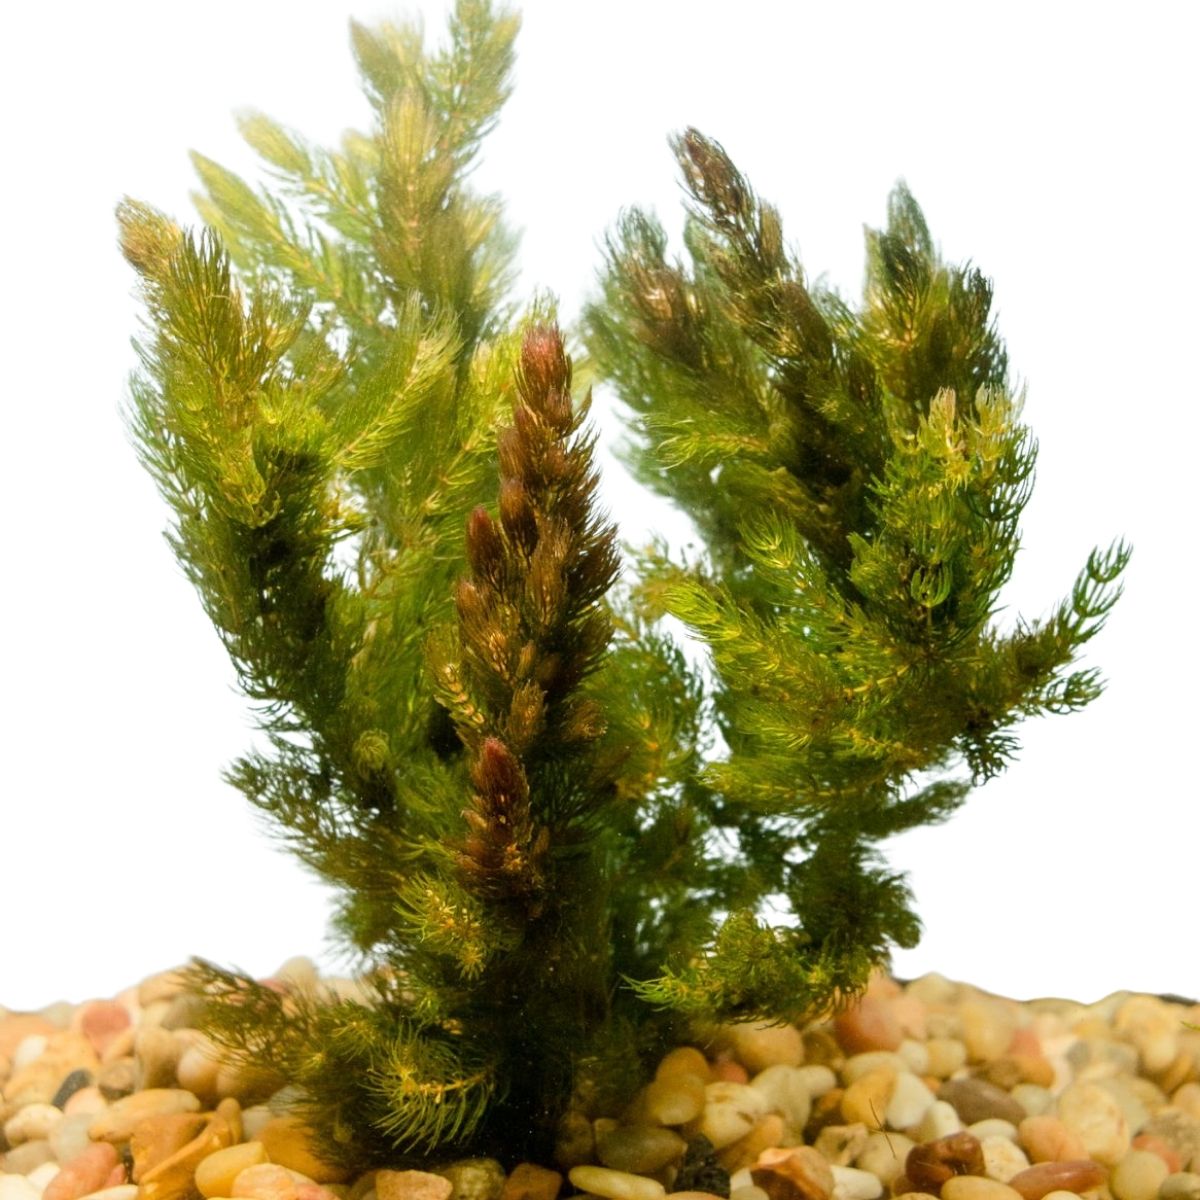 Hornwort aquatic plant